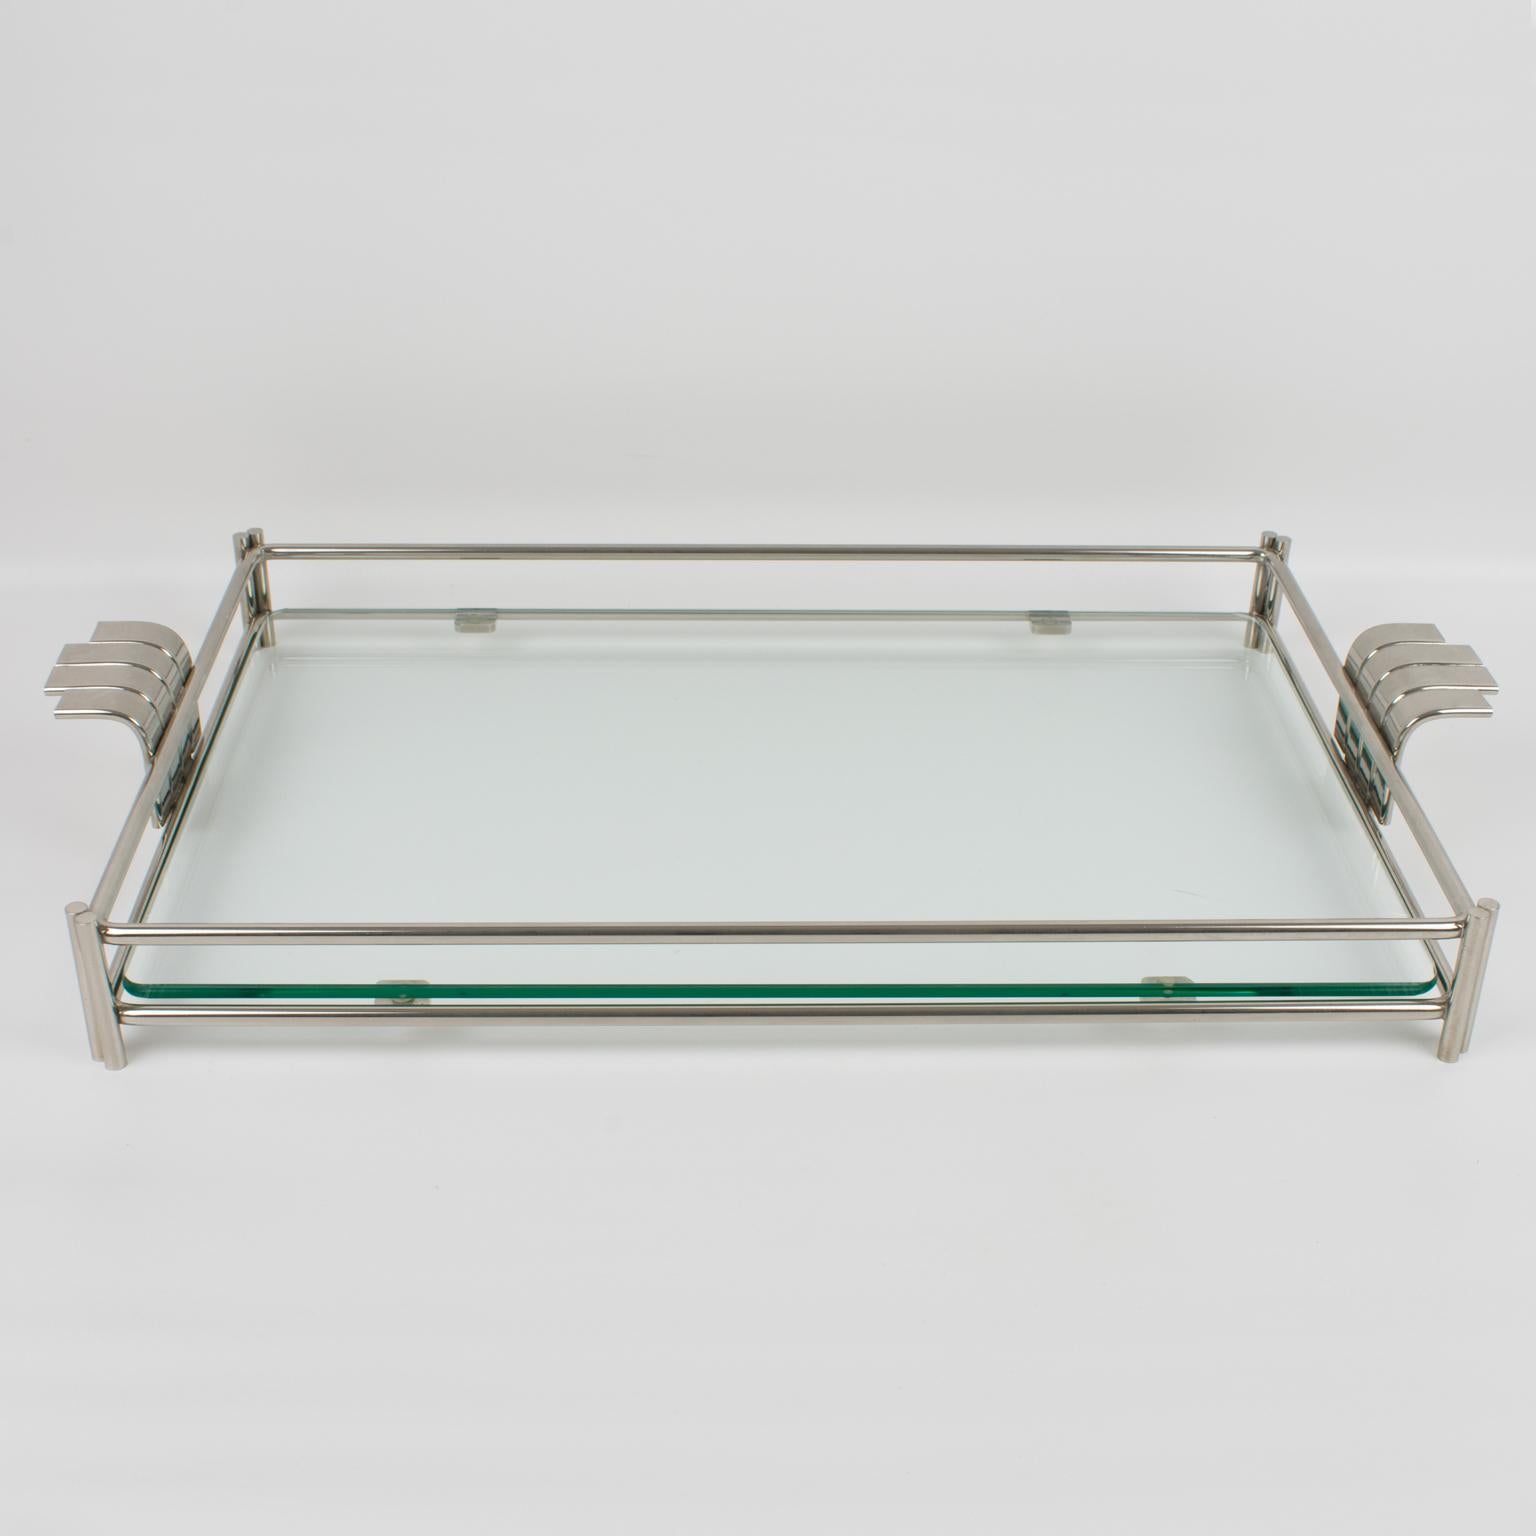 Ce plateau de service sophistiqué et moderniste a été conçu pour la Christian Dior Home Collection dans les années 1980. La grande forme rectangulaire du buffet est construite avec un cadre en métal argenté et un insert en verre épais. Le plateau